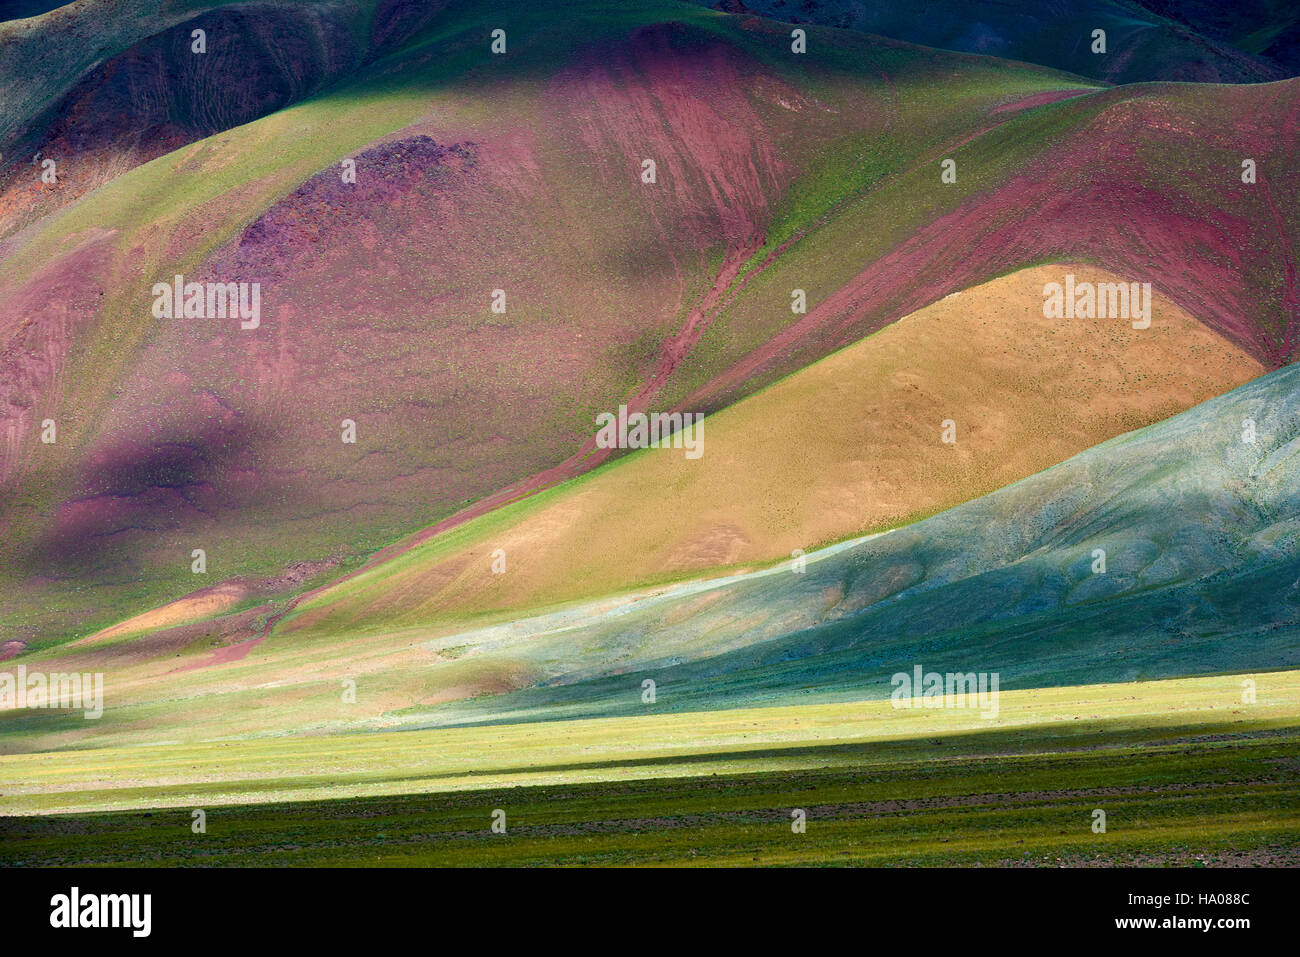 La Mongolie, Bayan-Ulgii province, l'ouest de la Mongolie, les montagnes colorées de l'Altay Banque D'Images